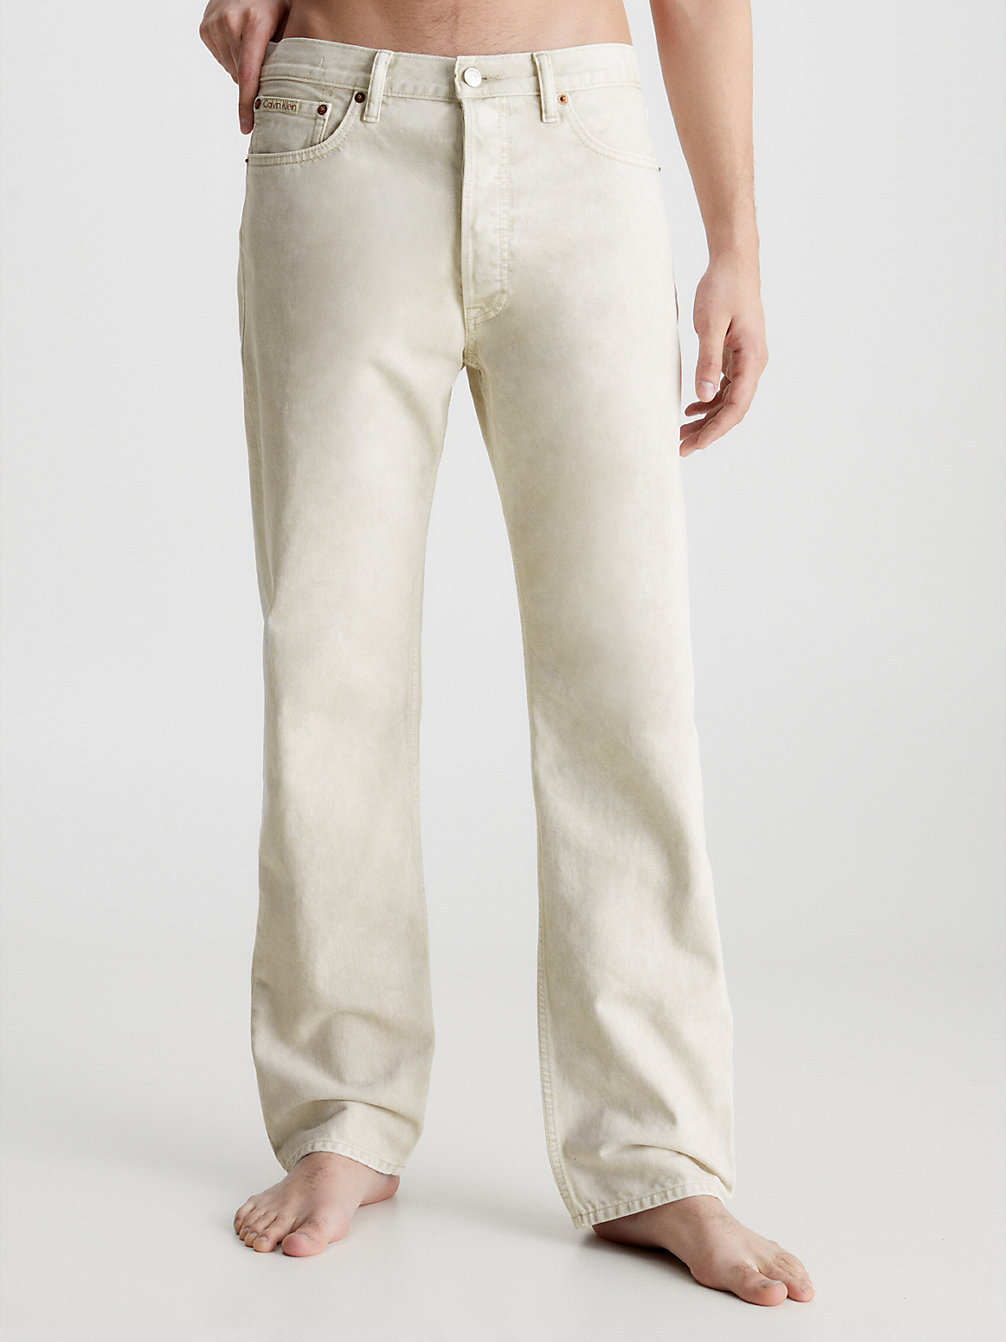 WHITE Unisex Straight Jeans - CK Standards undefined men Calvin Klein